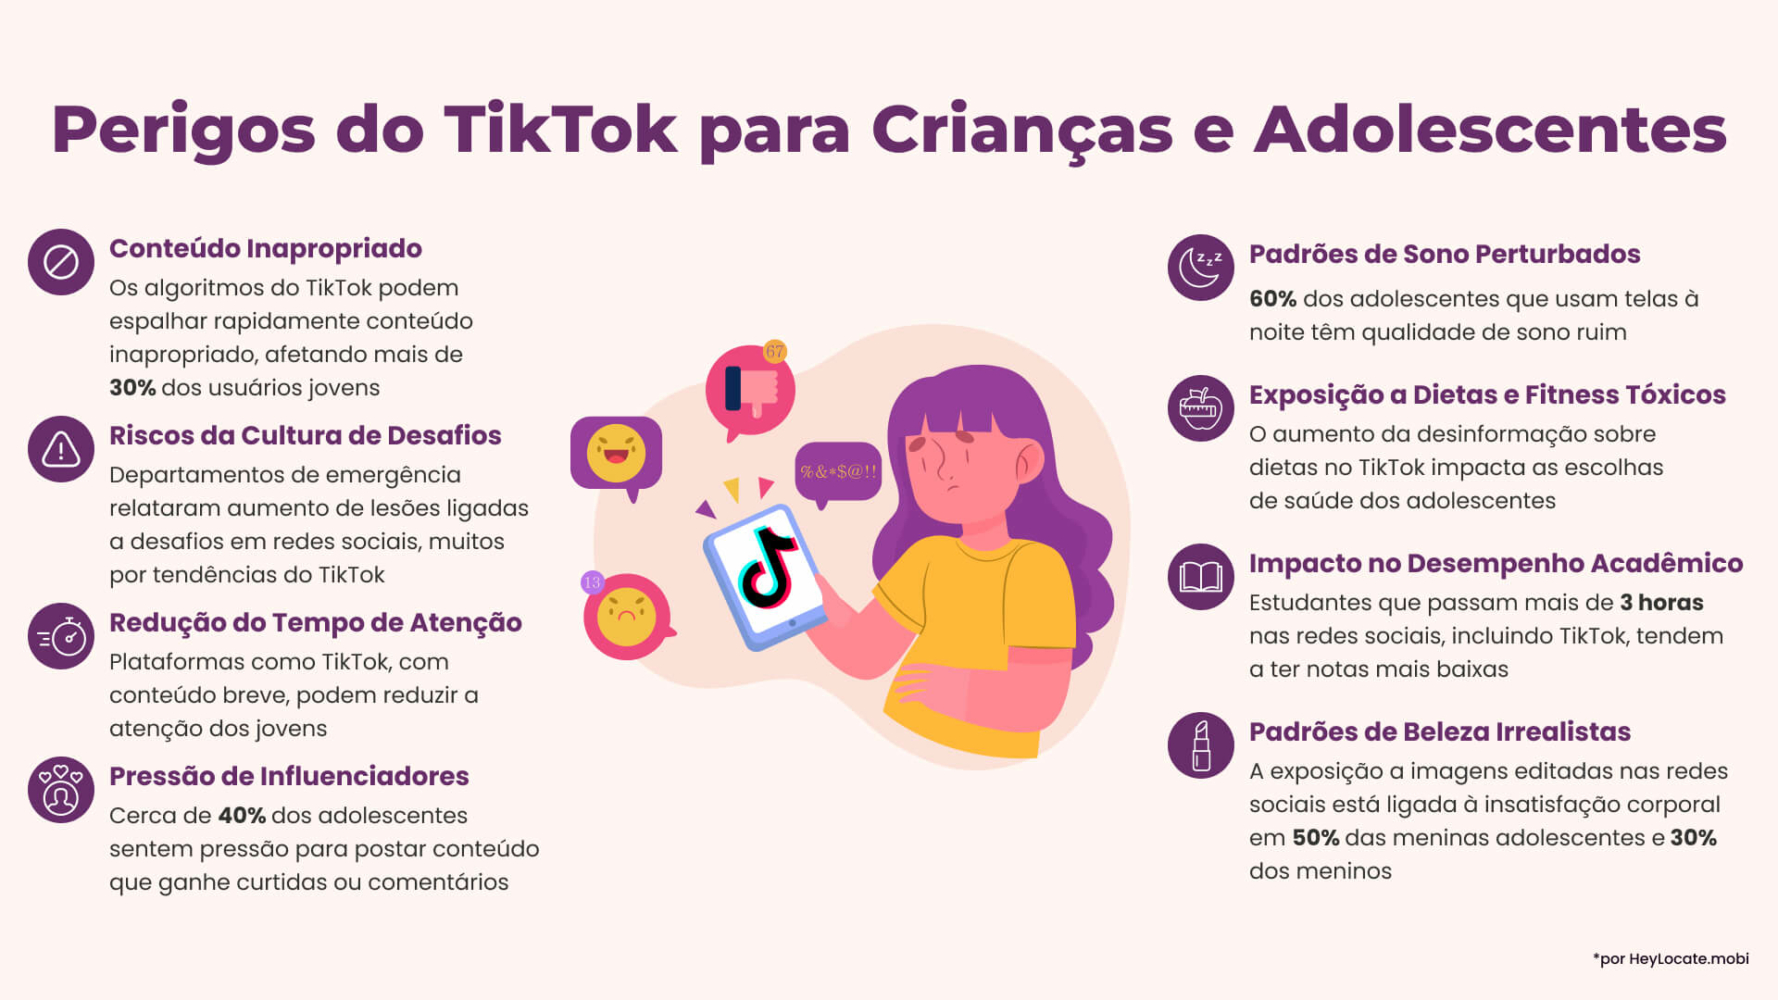 Lista de perigos do TikTok para crianças e adolescentes mostrada no infográfico do HeyLocate.mobi
